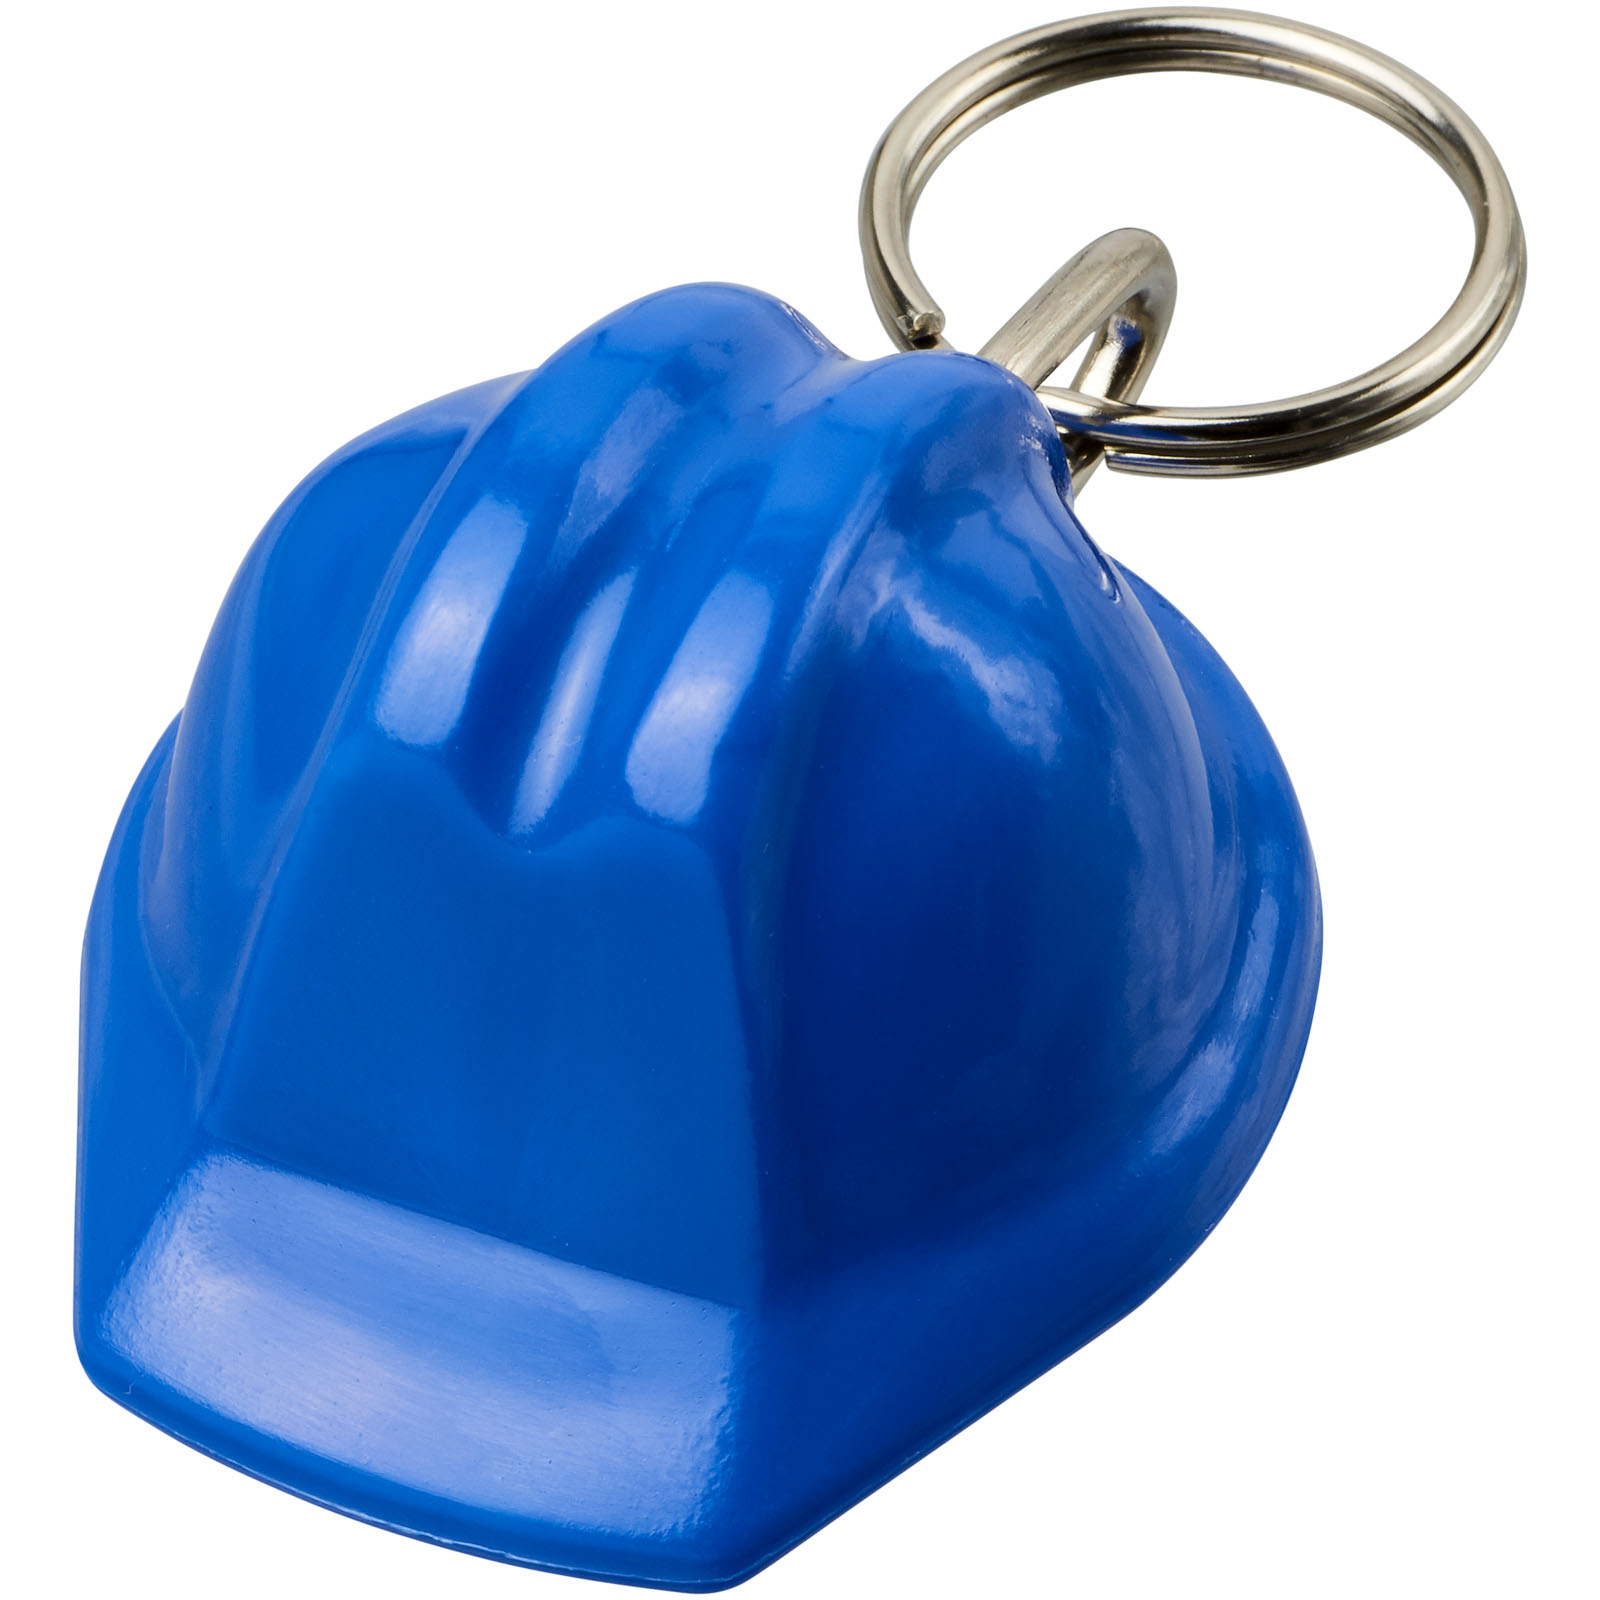 Porte-clés en forme de casque de chantier Kolt - Bleu imprimé et